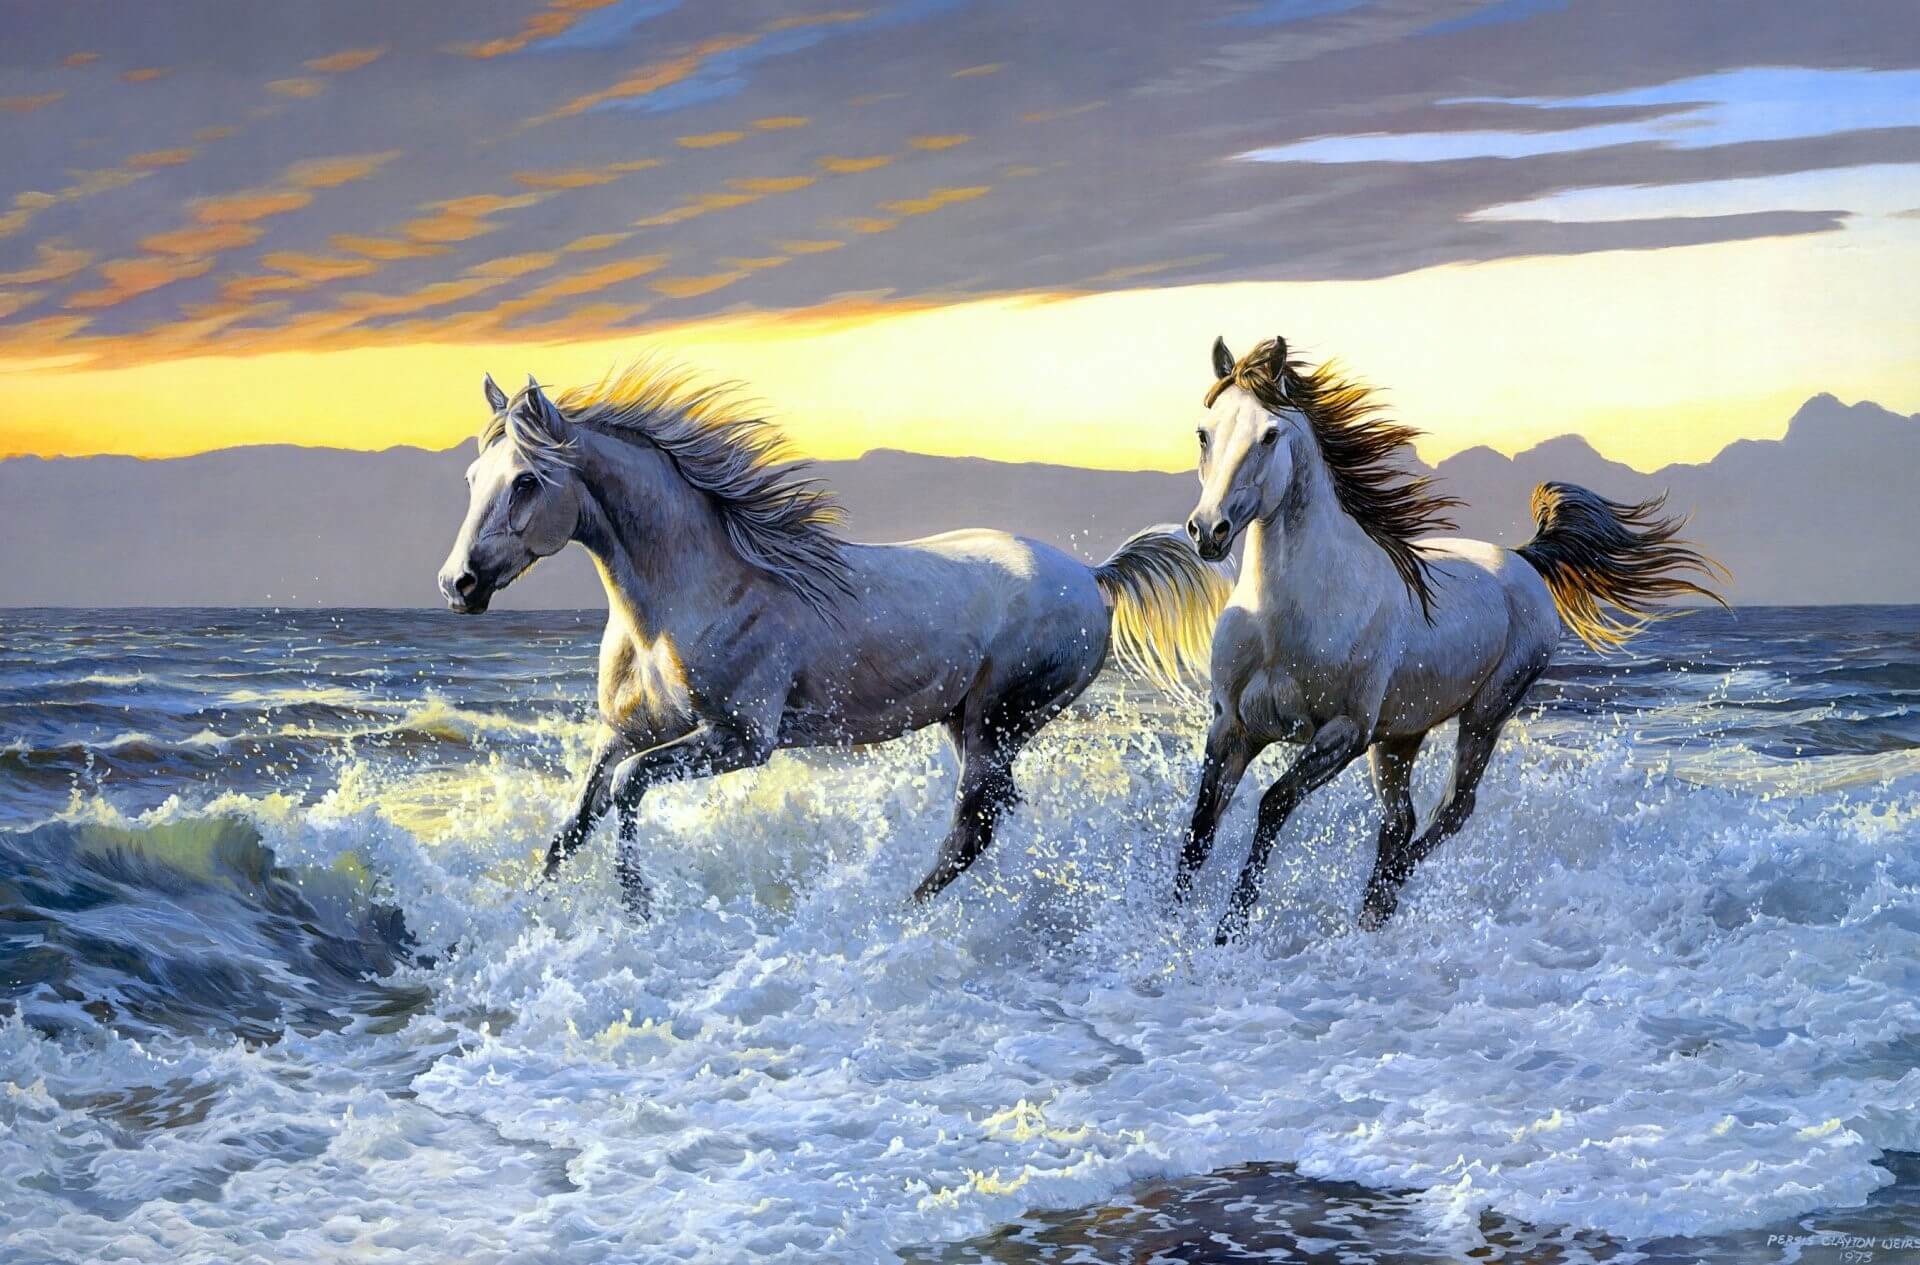 Hình nền mã đáo thành công cực đẹp  Tải hình ảnh ngựa đẹp